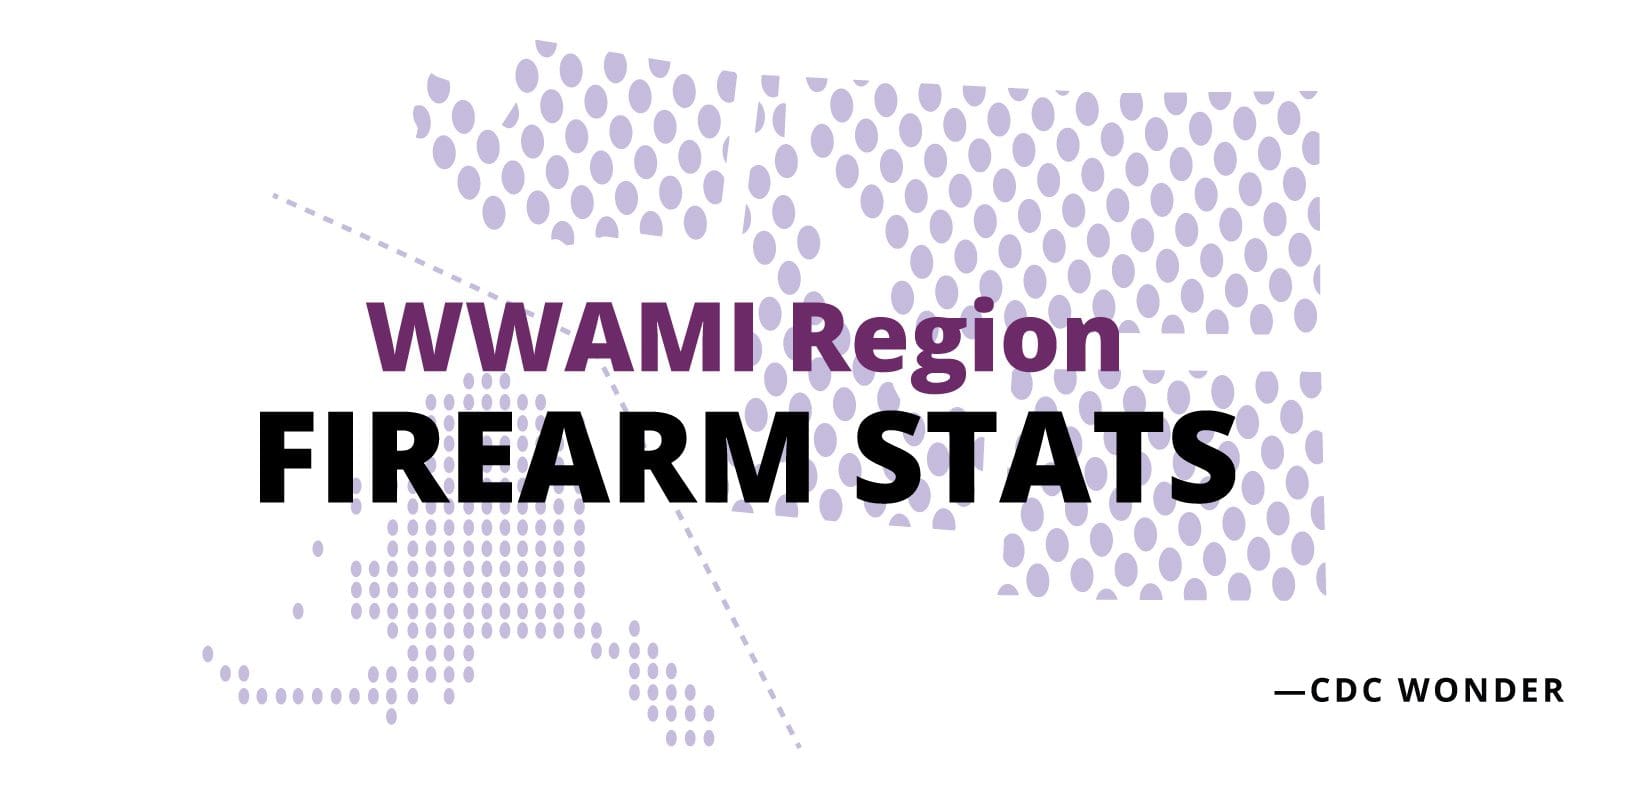 WWAMI Region FIREARM STATS